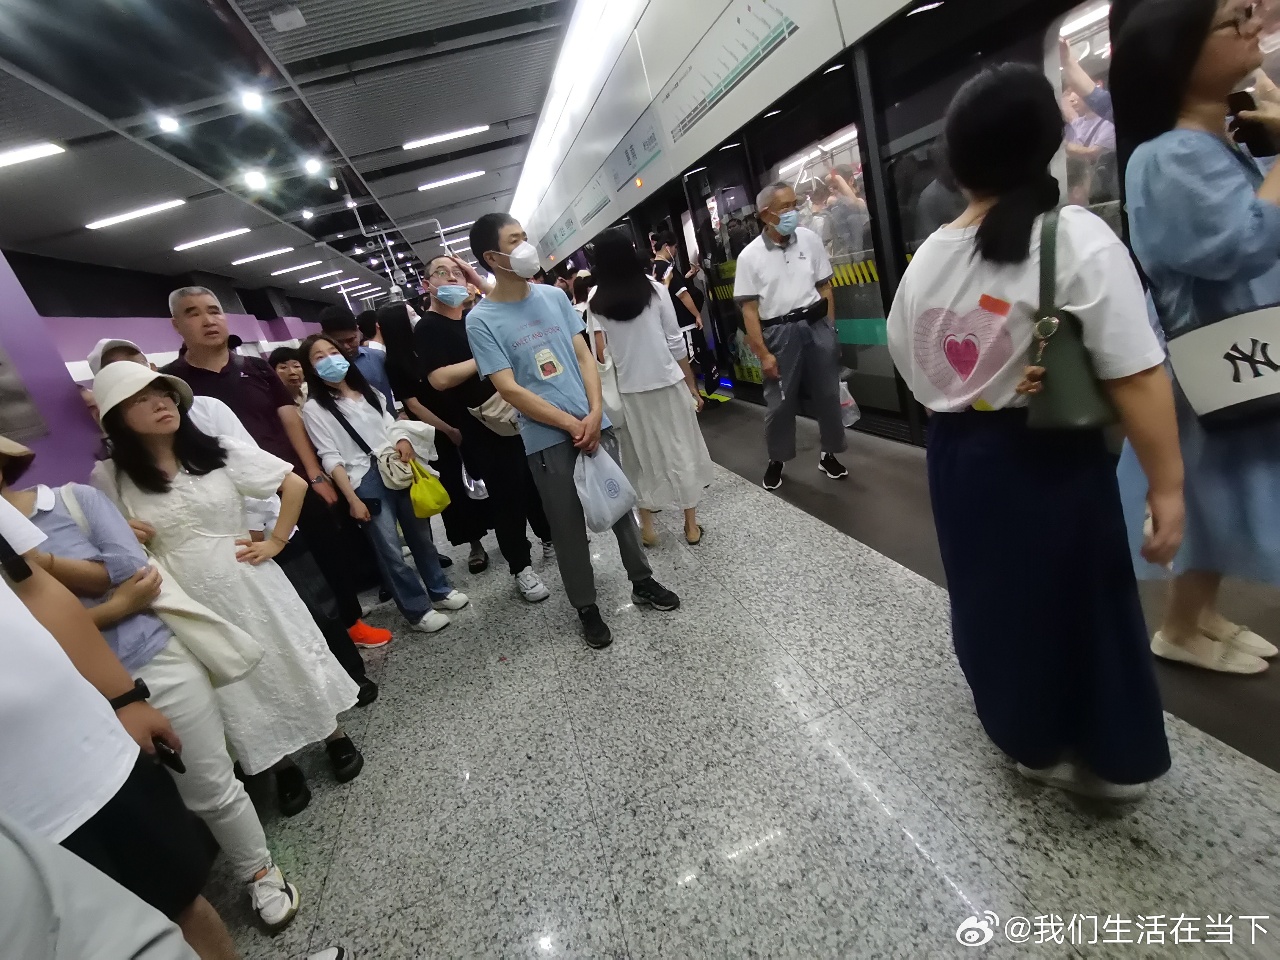 上海地鐵16號線凸槌 上班族崩潰